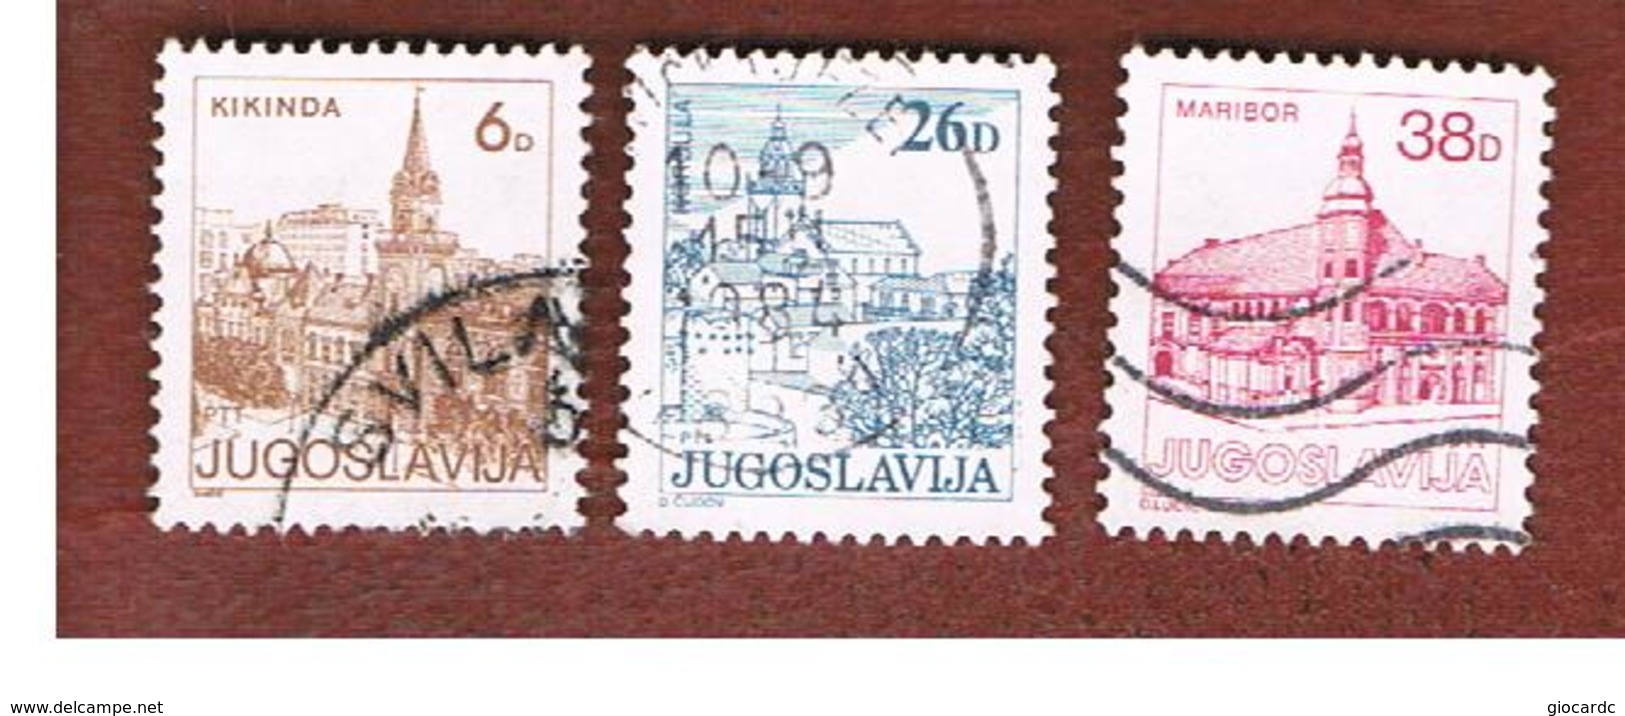 JUGOSLAVIA (YUGOSLAVIA)   - SG 1672.1679   -    1984  TOURISM          -  USED - Usati